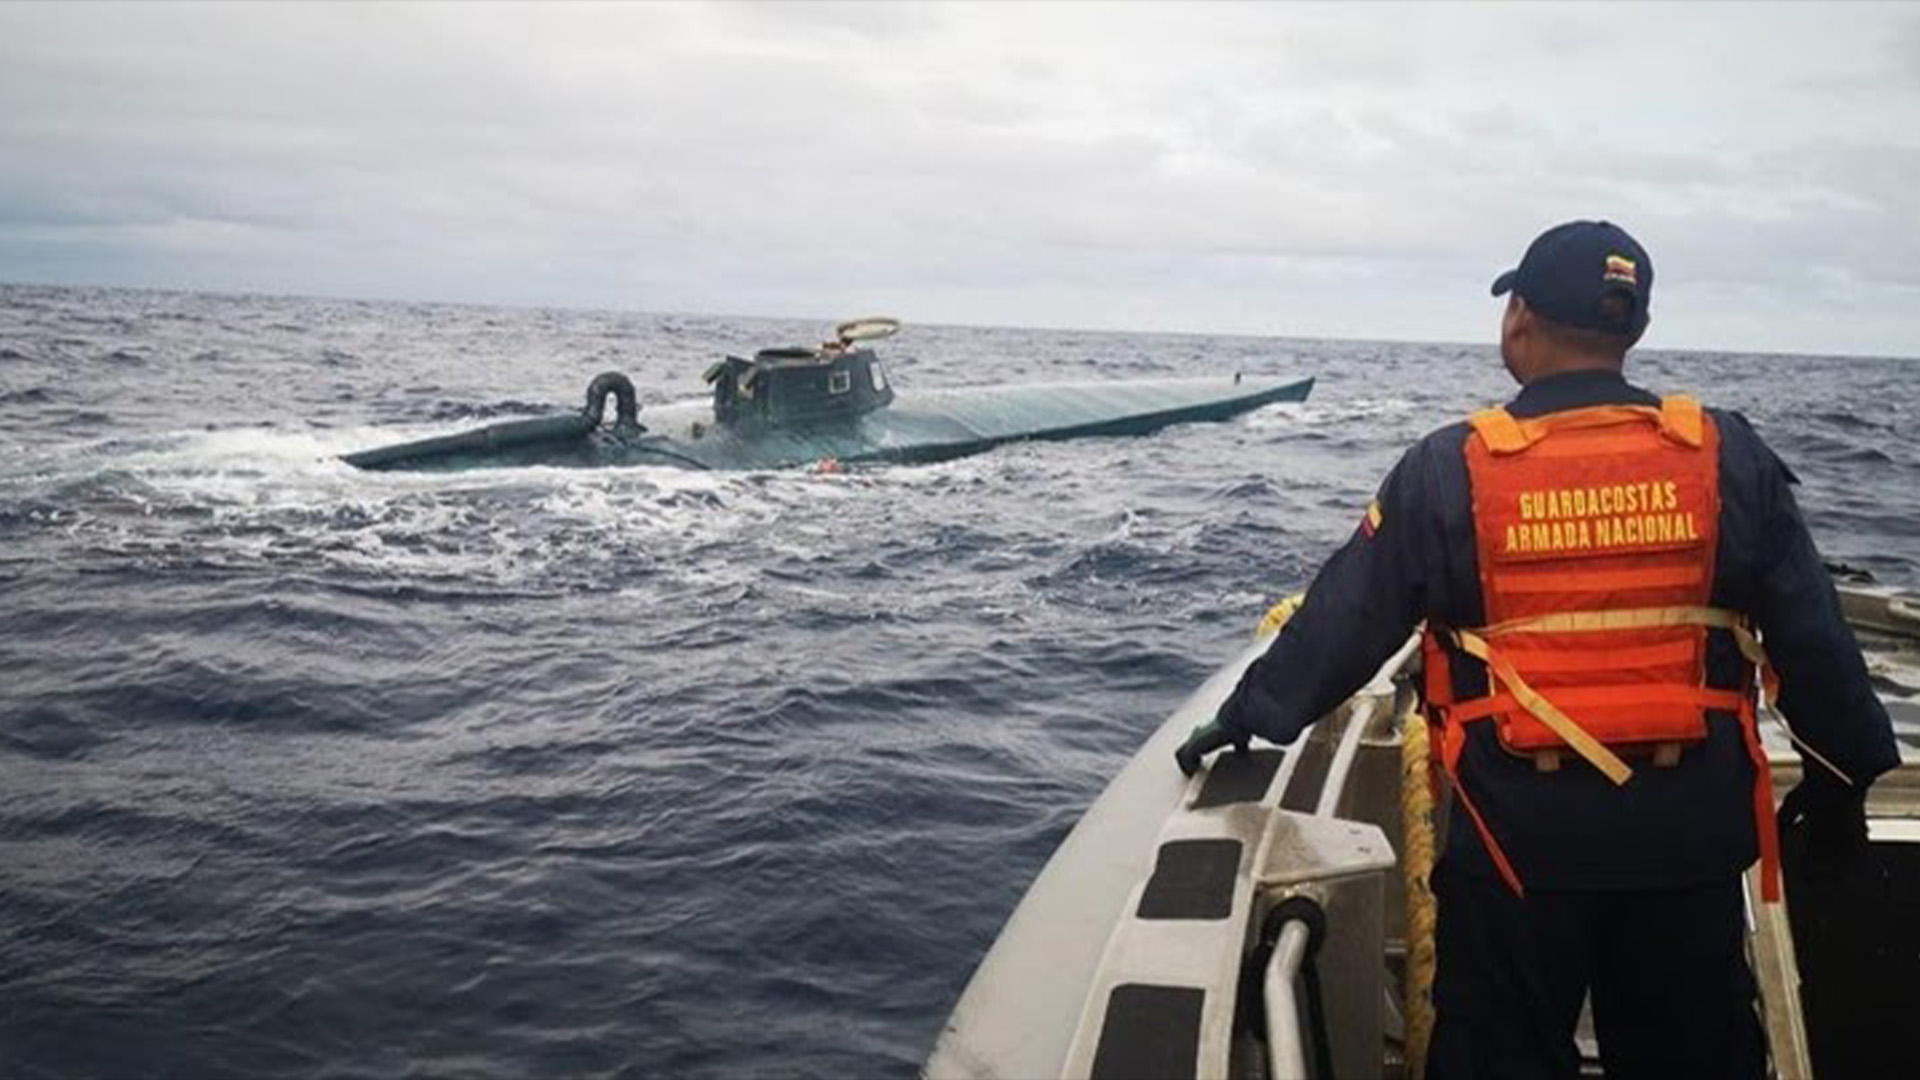 Los narcosubmarinos son muchas veces imperceptibles por las autoridades al navegar a baja profundidad y sin estar completamente en la superficie (Foto: Twitter@zonacero)